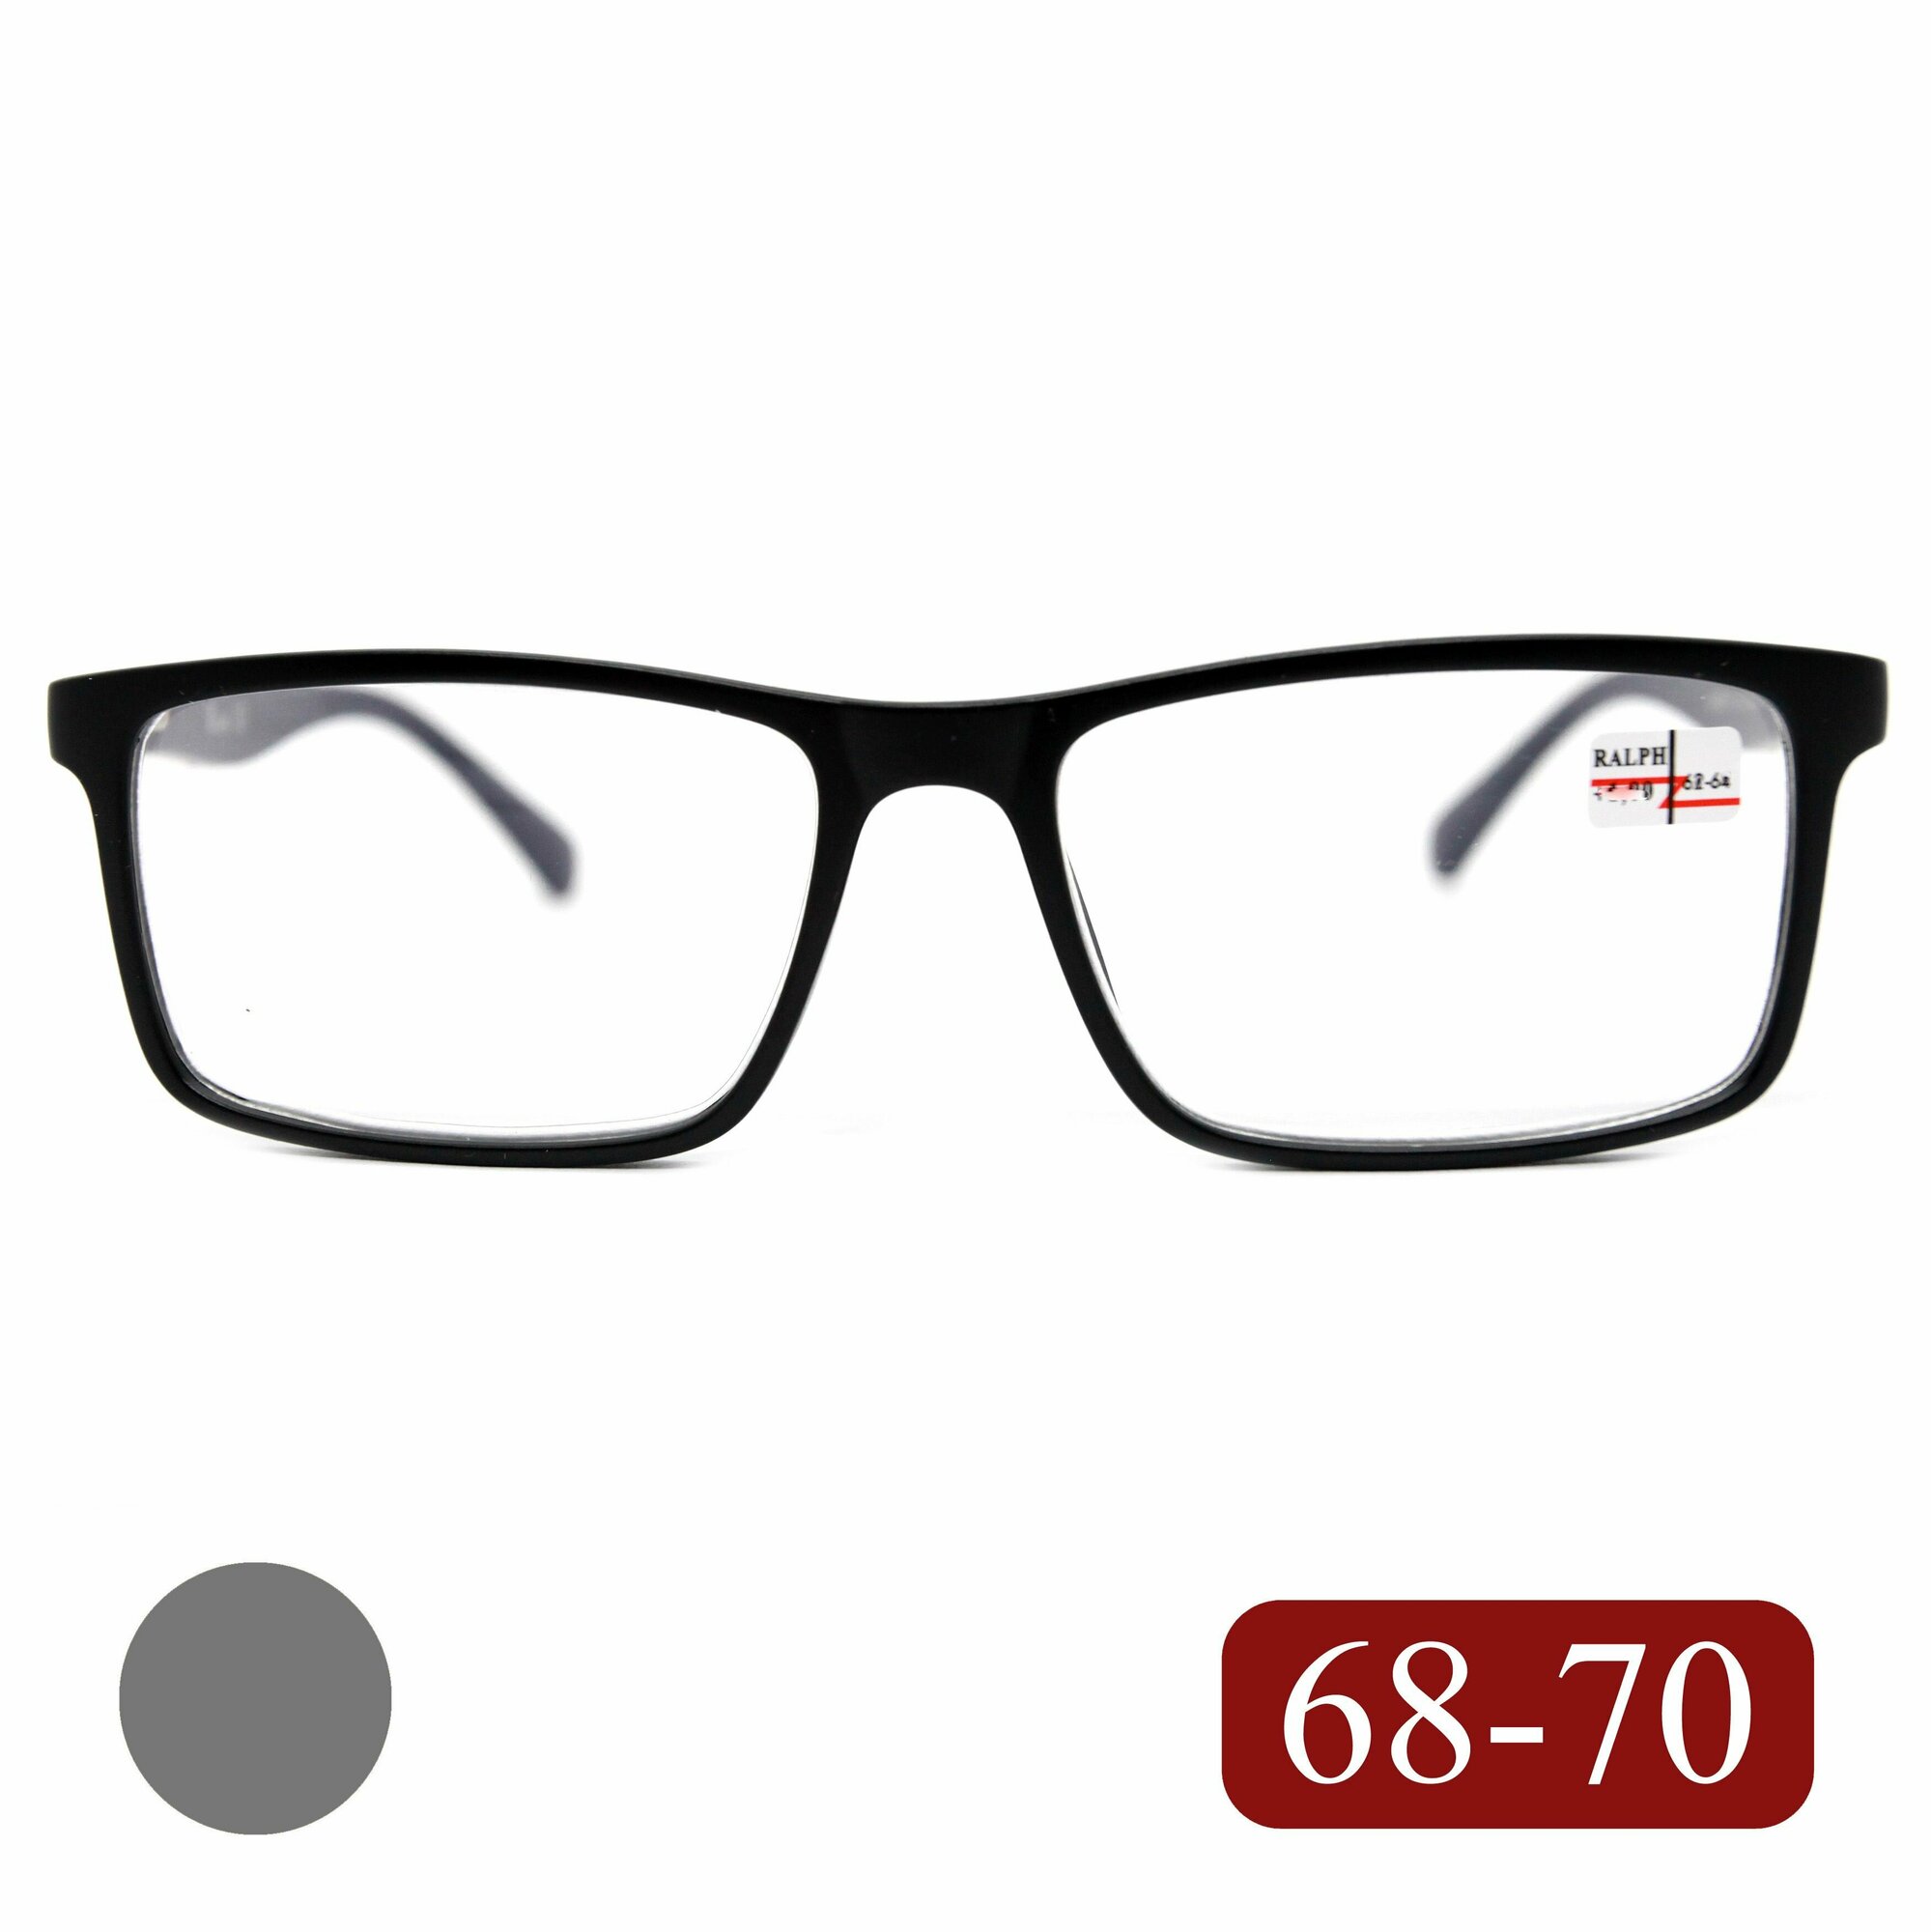 Мужские очки РЦ 68-70 для чтения (+4.50) RALPH 0682 C1 без футляра цвет черный-матовый заушник серый линзы пластик РЦ 68-70